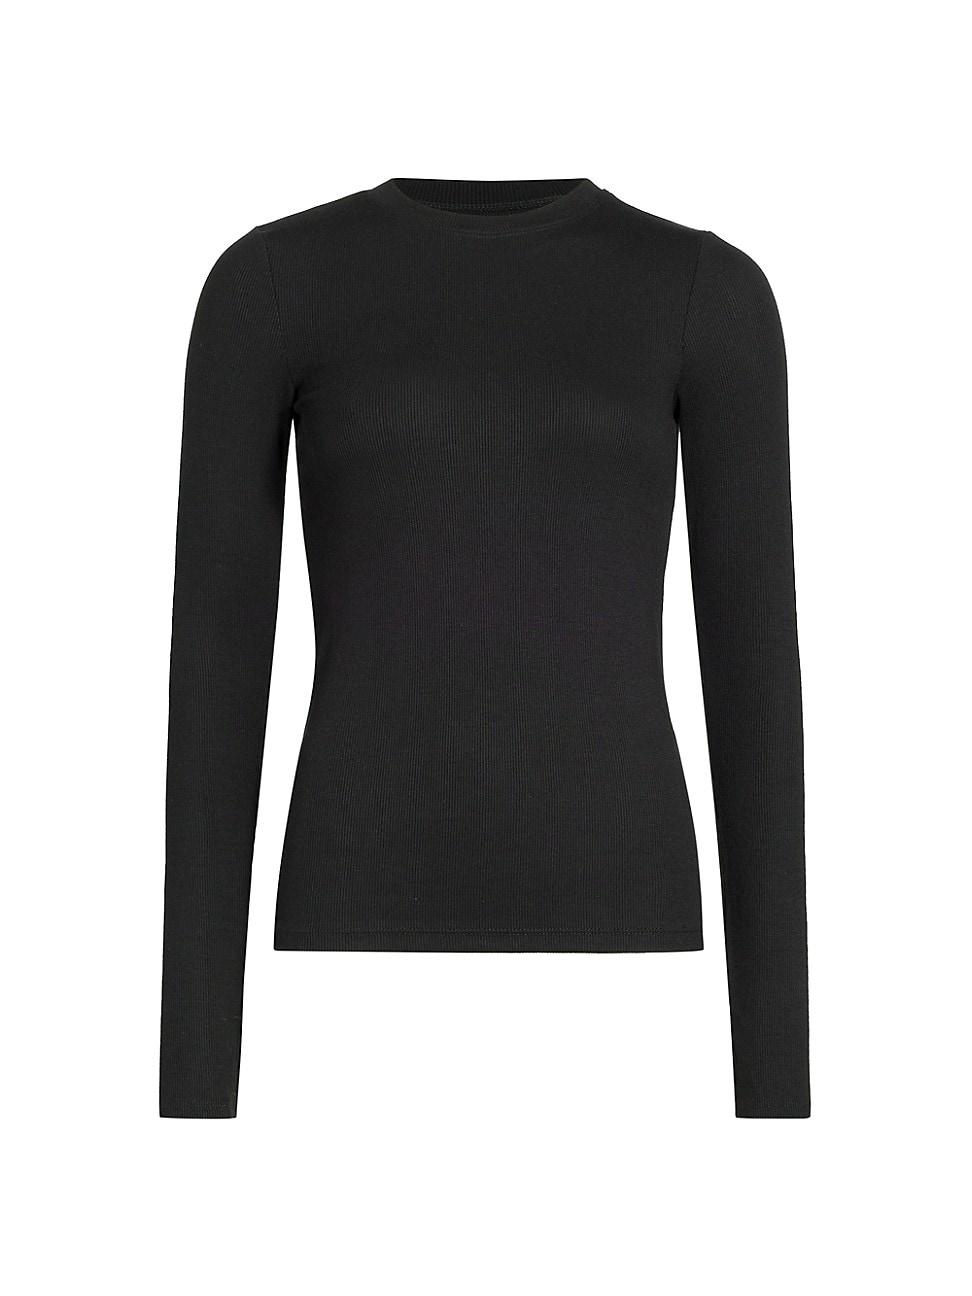 Splits59 Louise Ribbed Long-sleeve Top in Black | Lyst